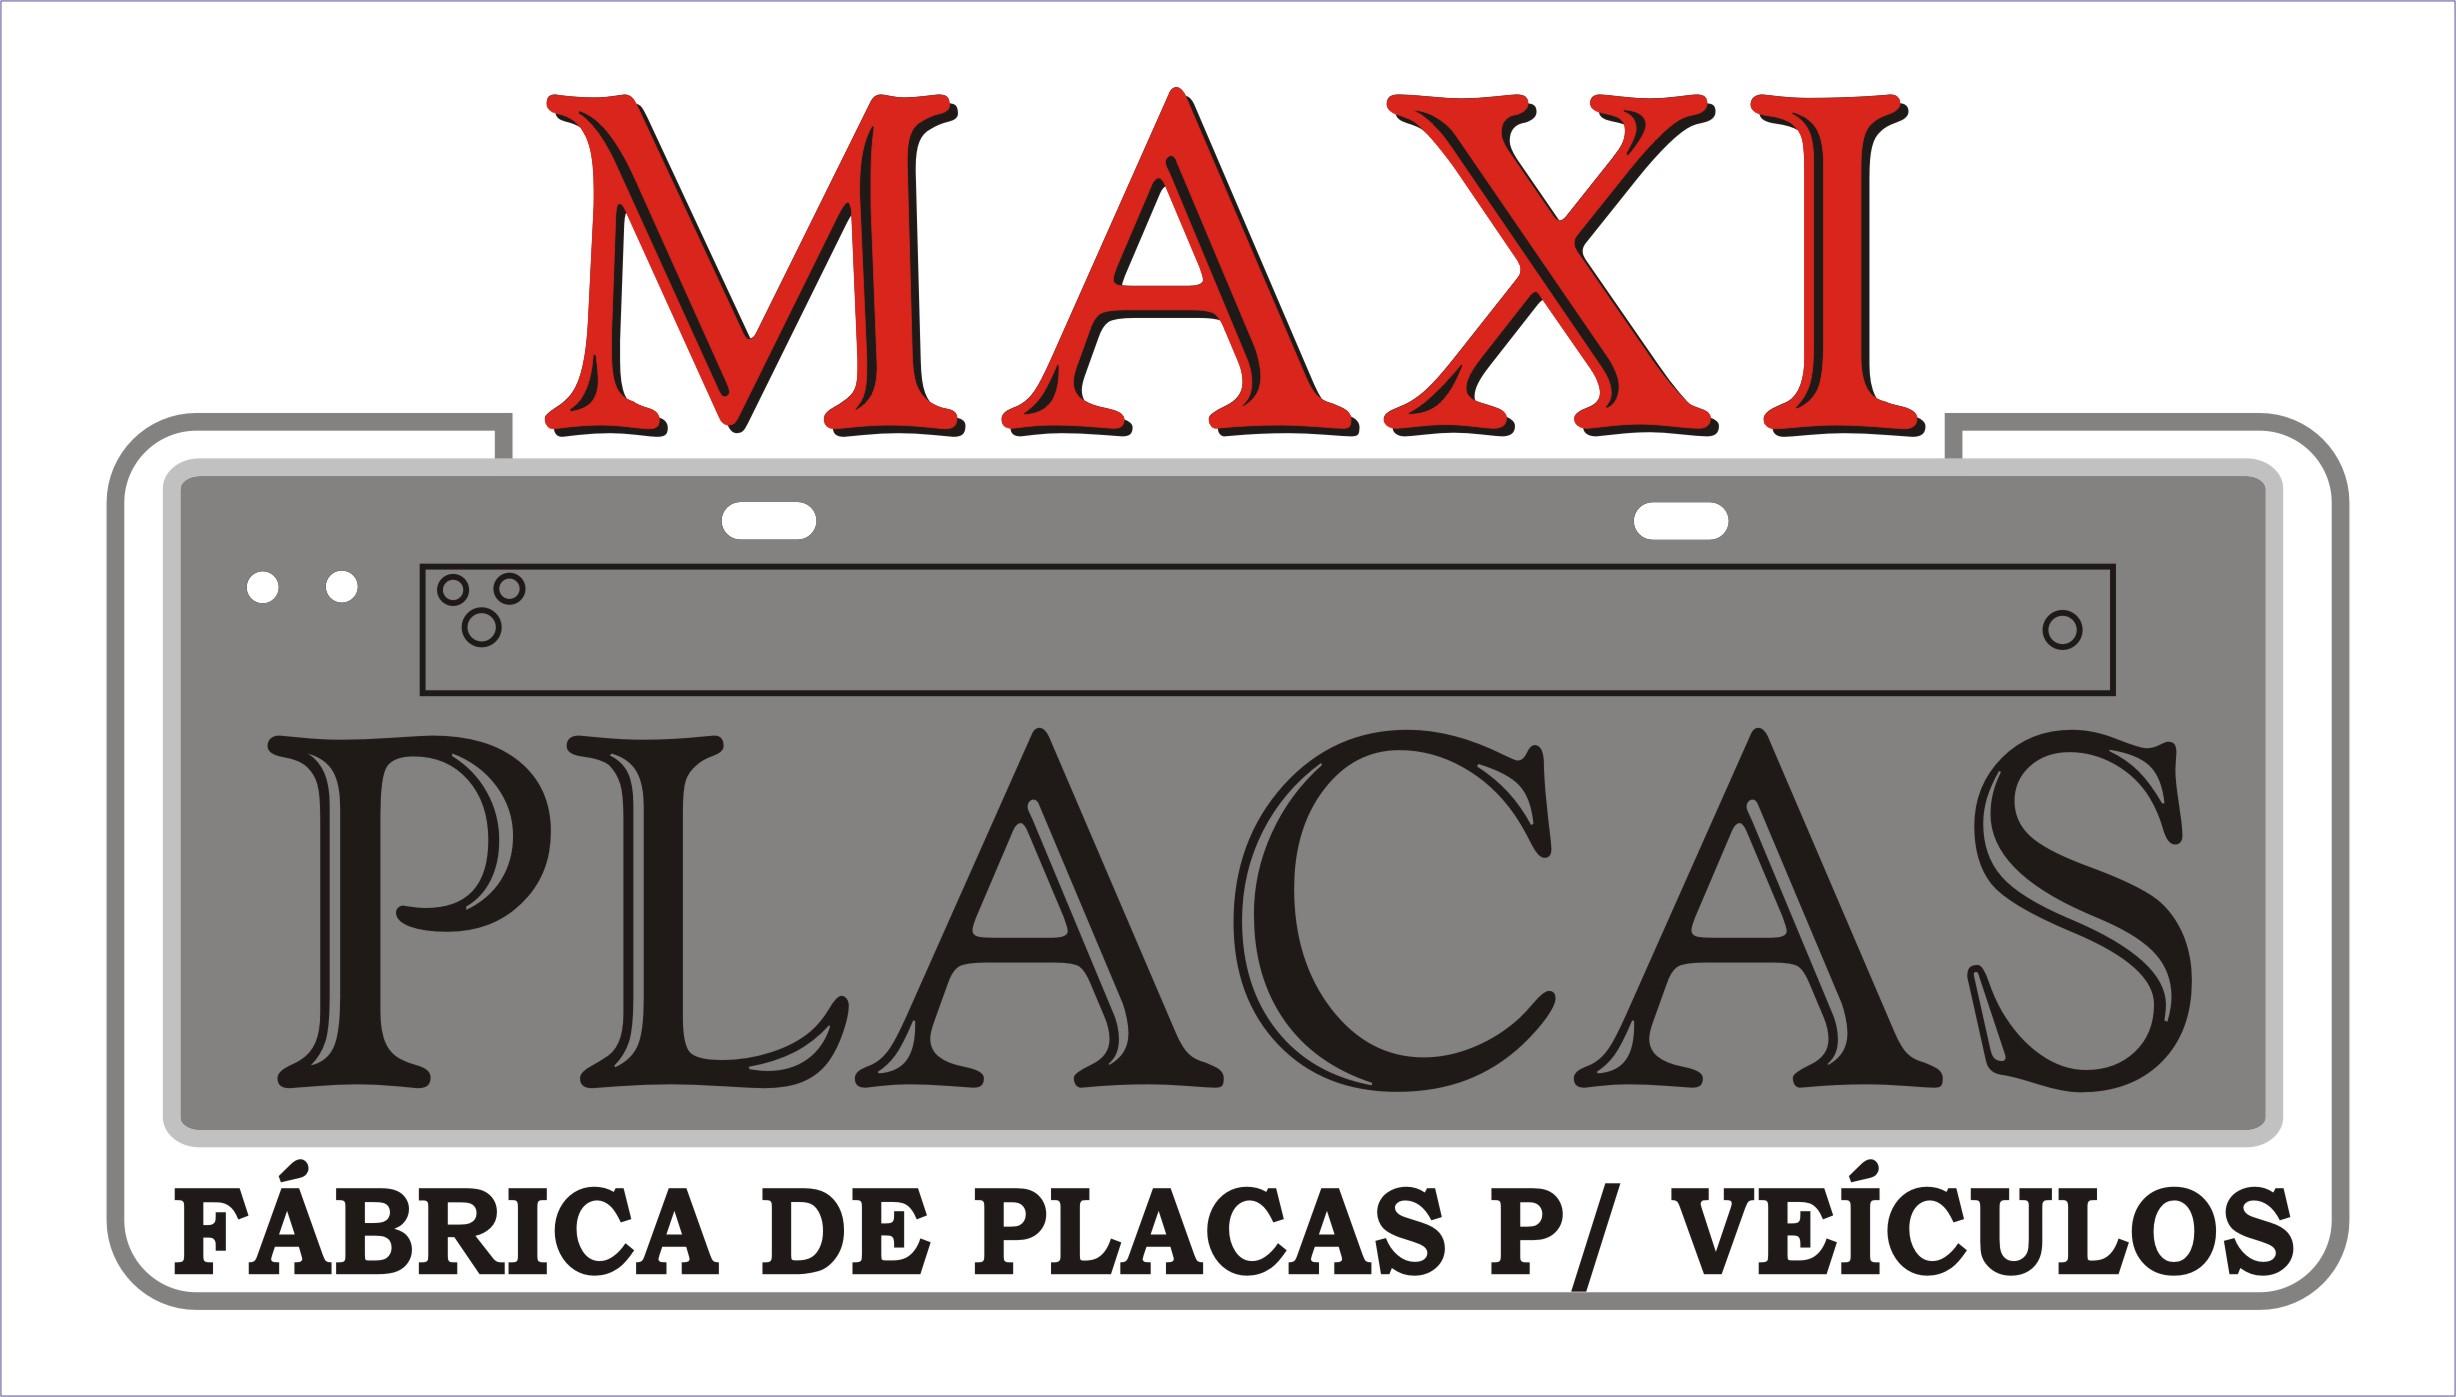 Maxi Placas